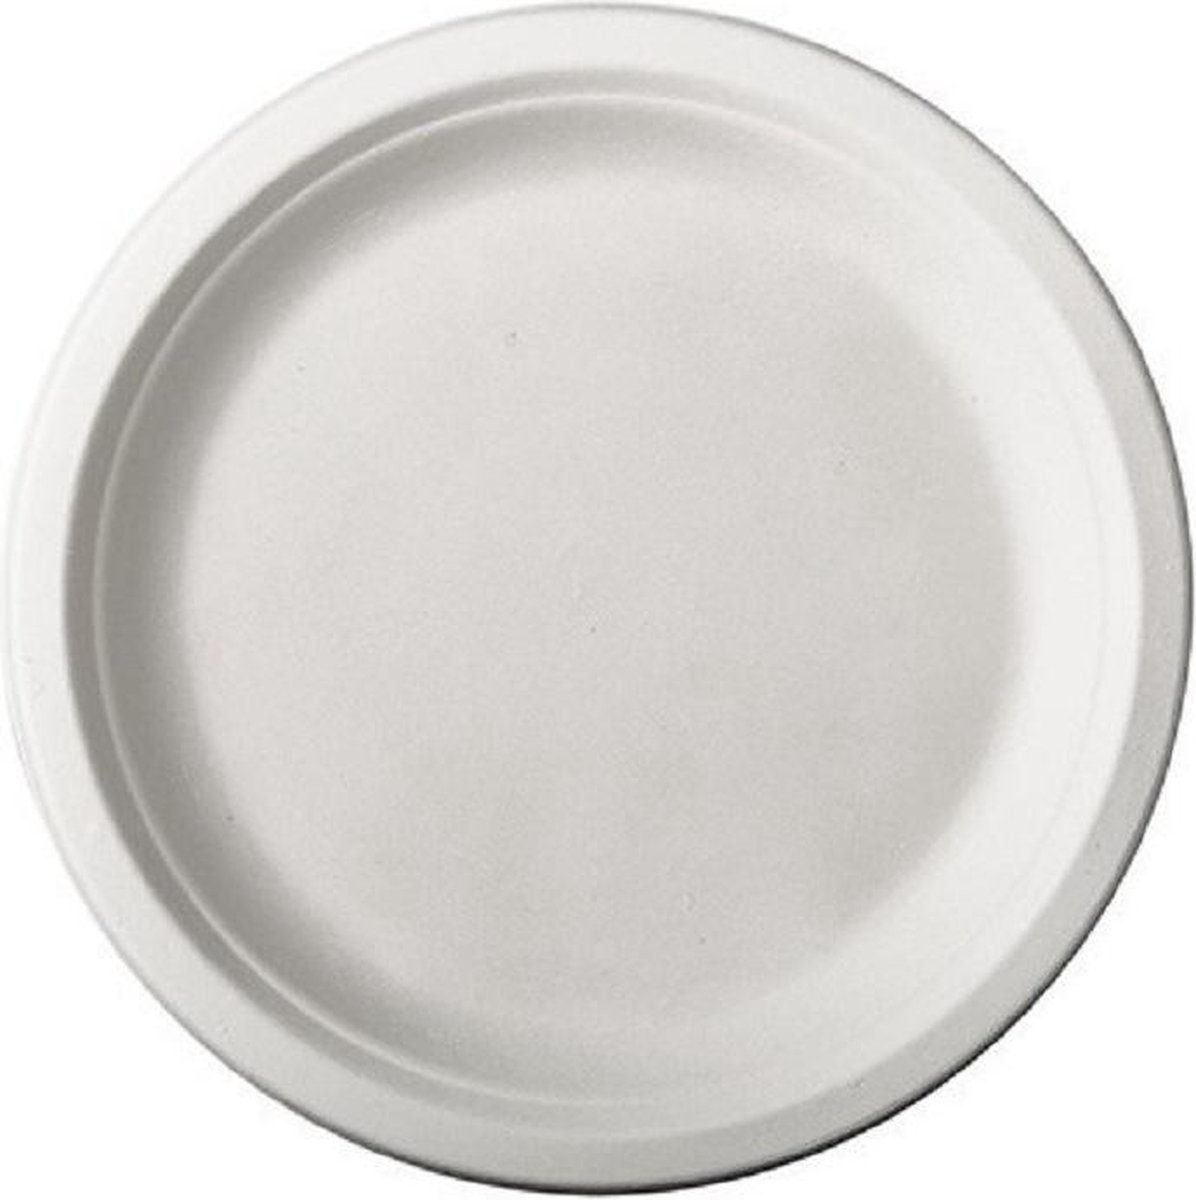 48x Witte suikerriet dinerbordjes 26 cm biologisch afbreekbaar - Ronde wegwerp bordjes - Pure tableware - Duurzame materialen - Milieuvriendelijke wegwerpservies borden - Ecologisch verantwoord